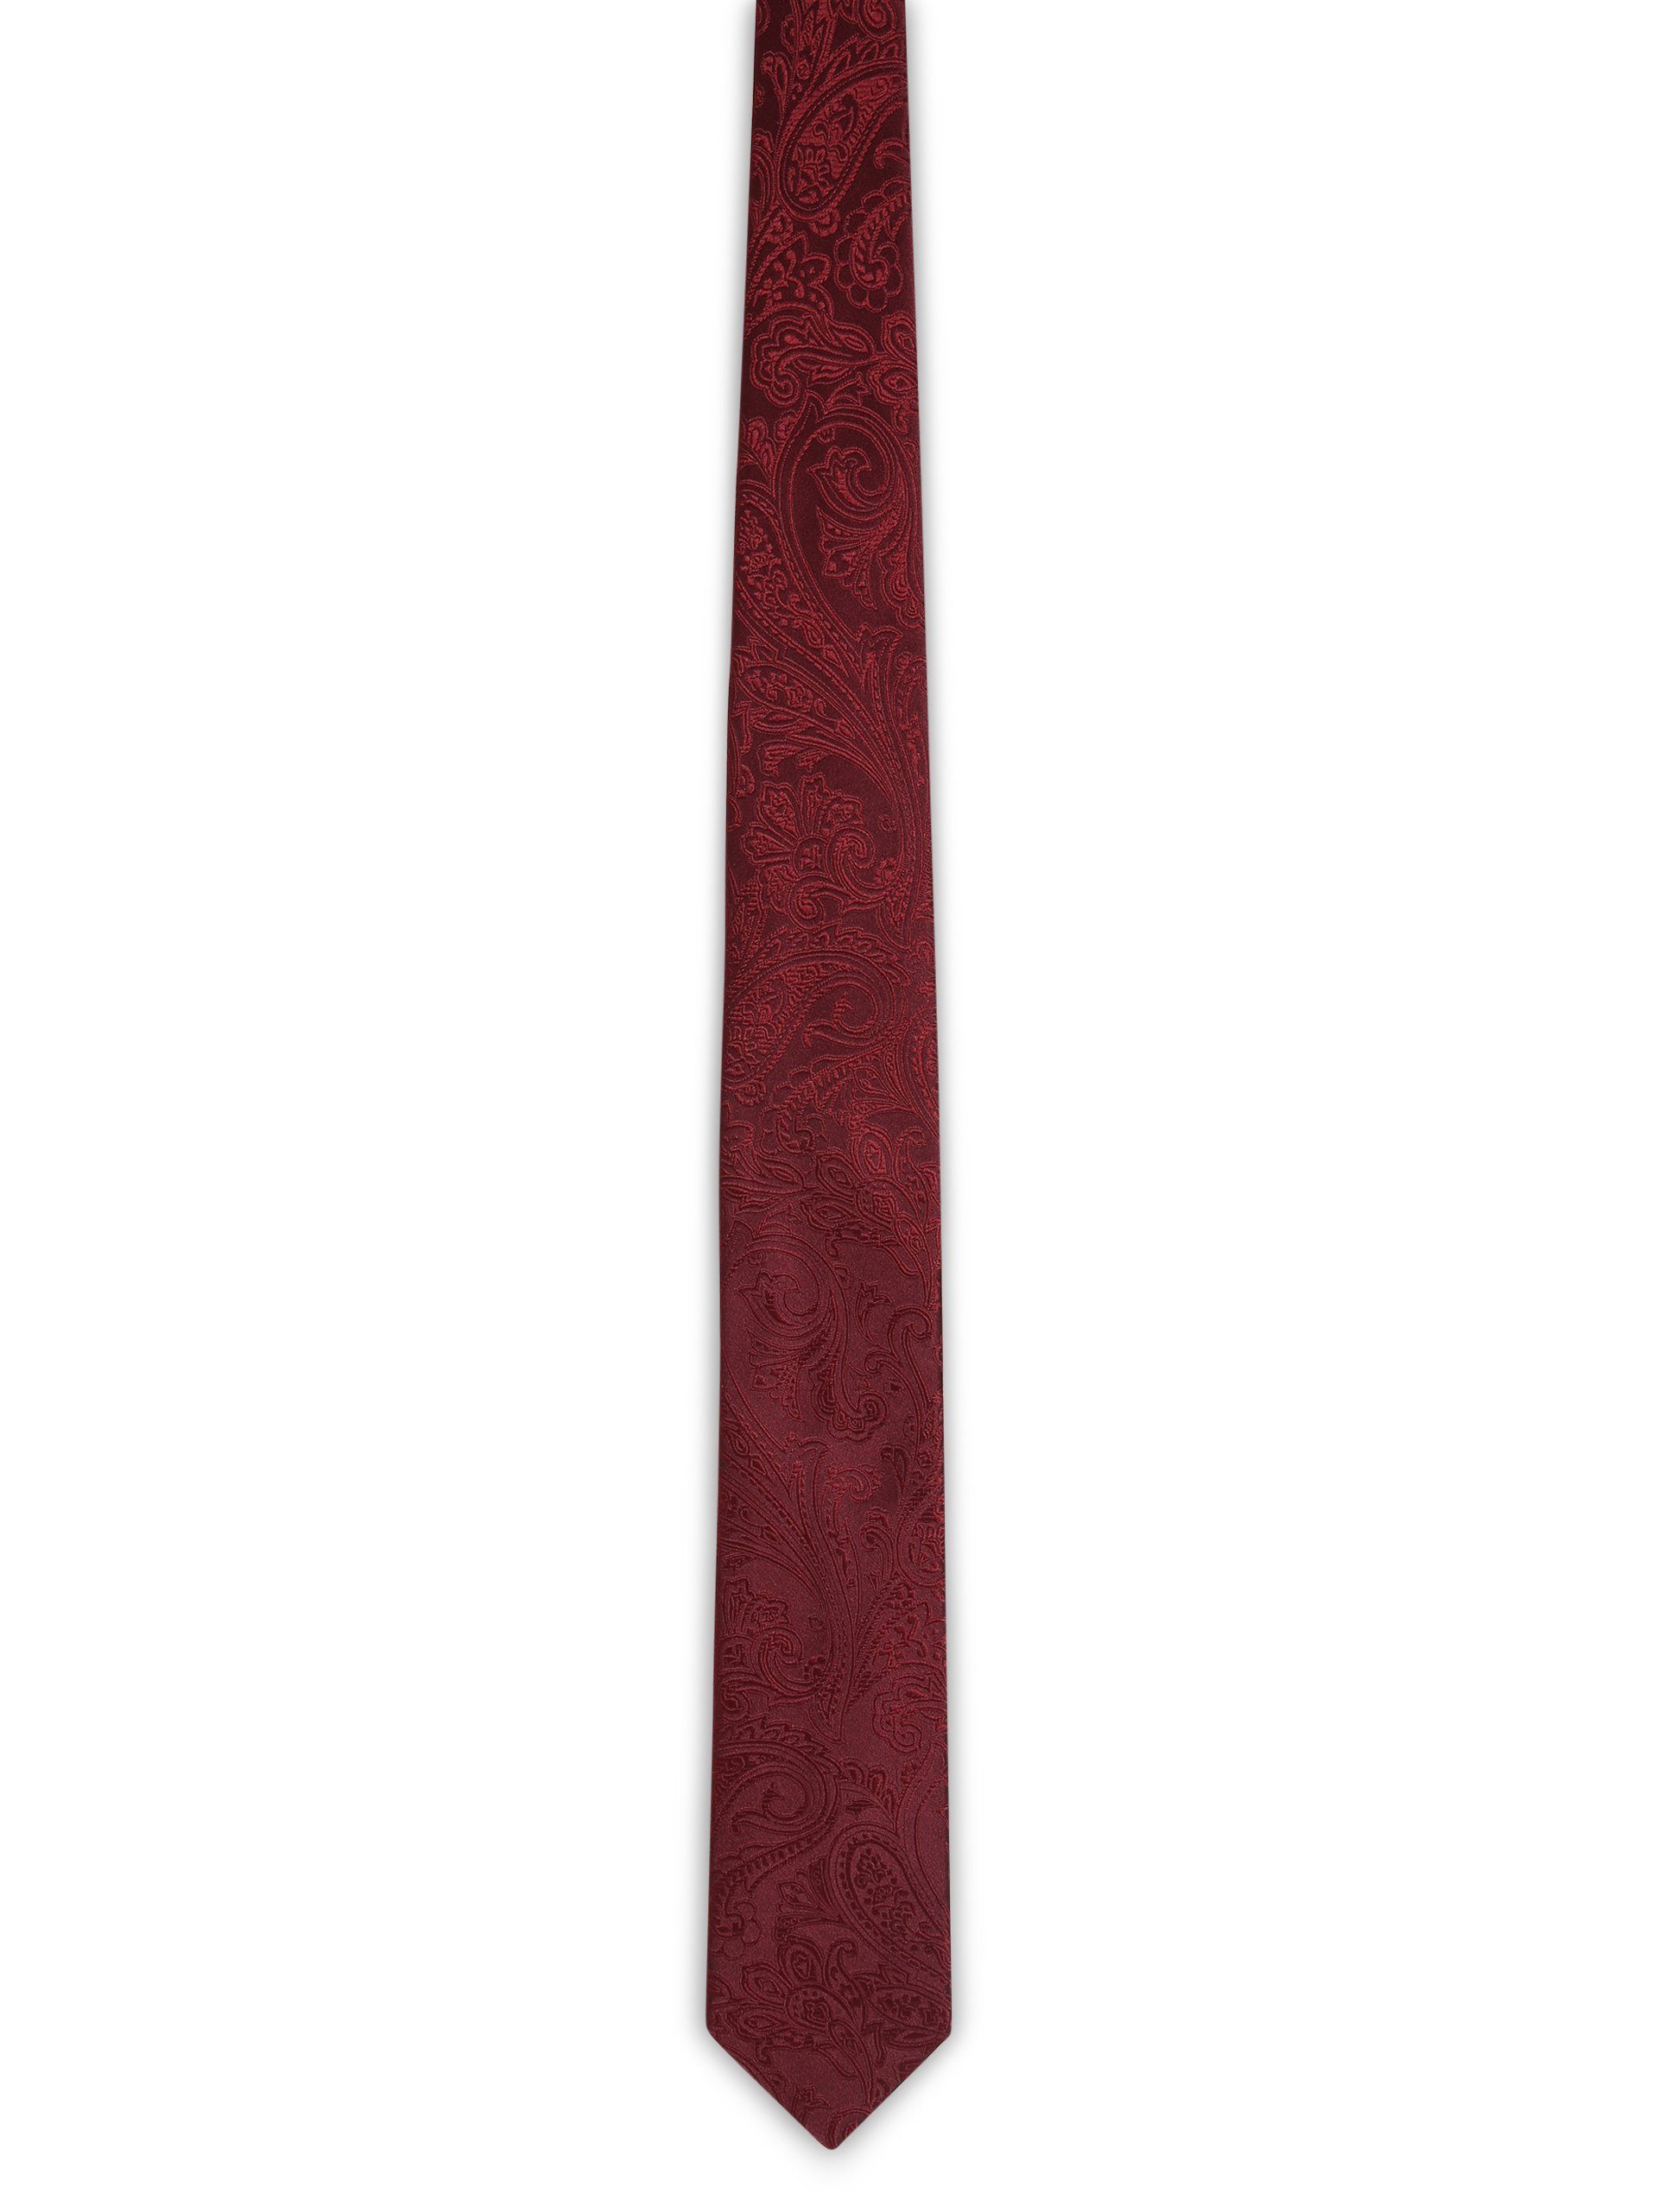 OLYMP Krawatte bordeaux